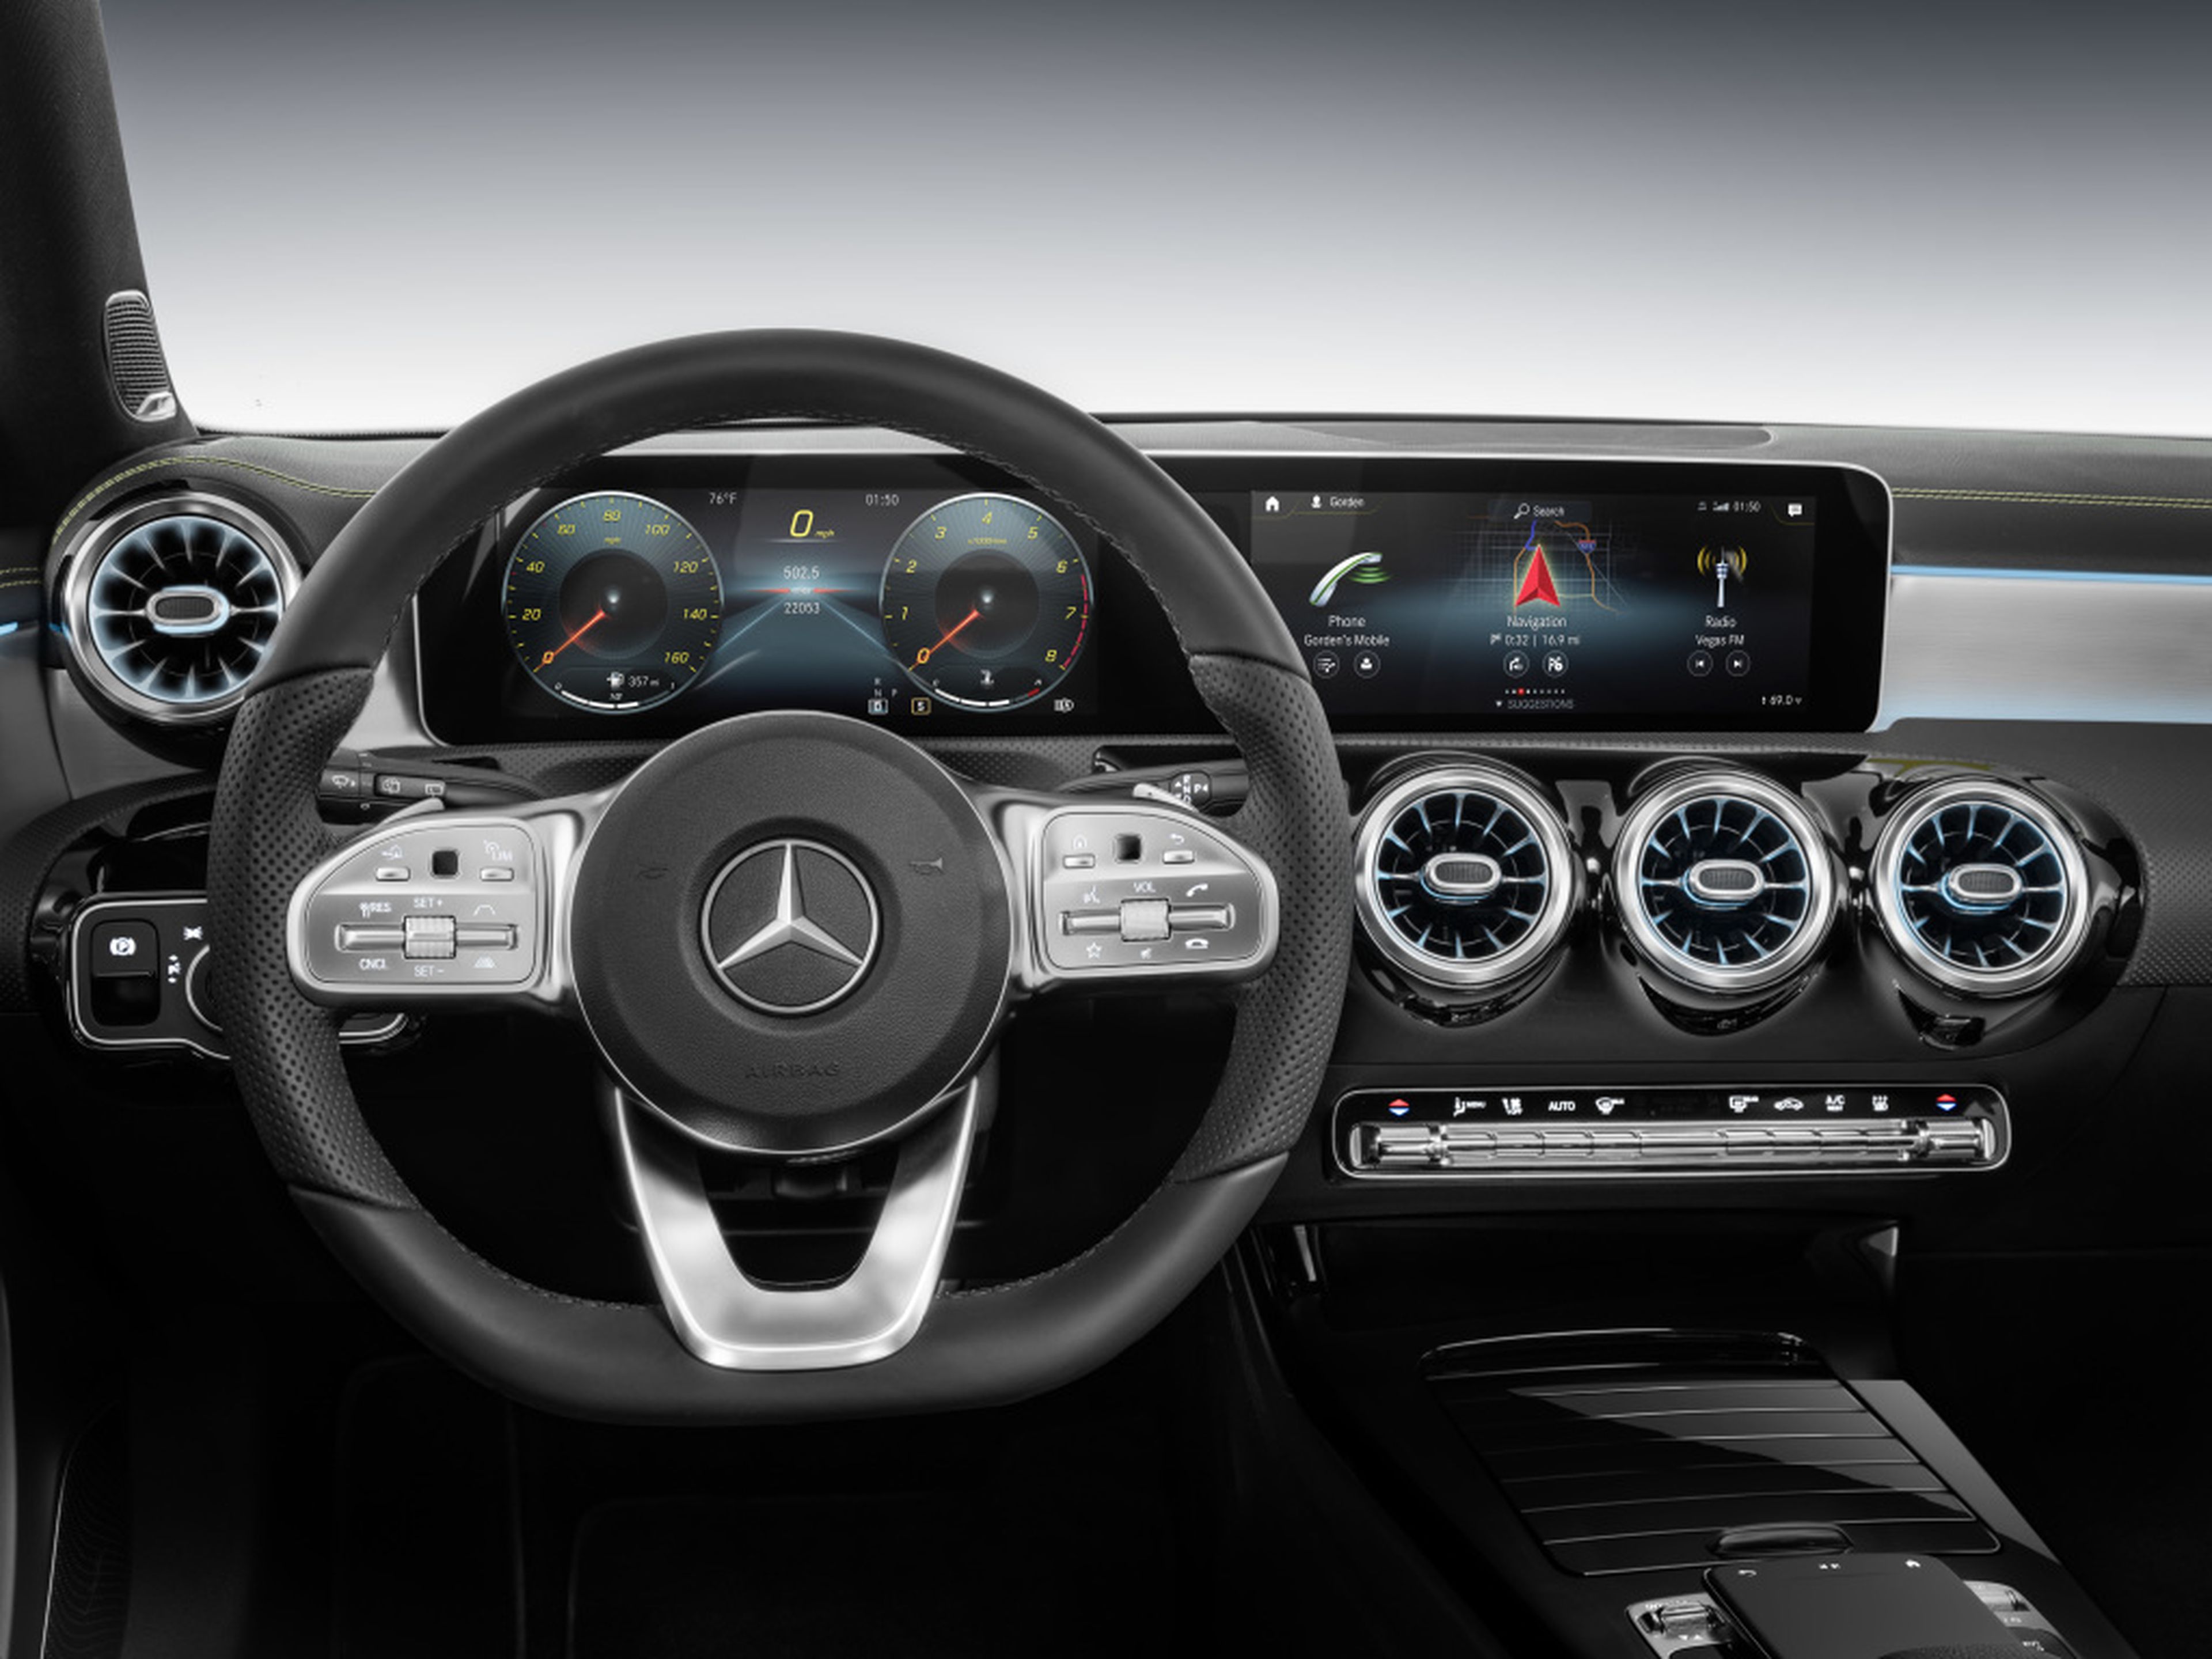 Nuevo sistema de infoentretenimiento del Mercedes Clase A 2018